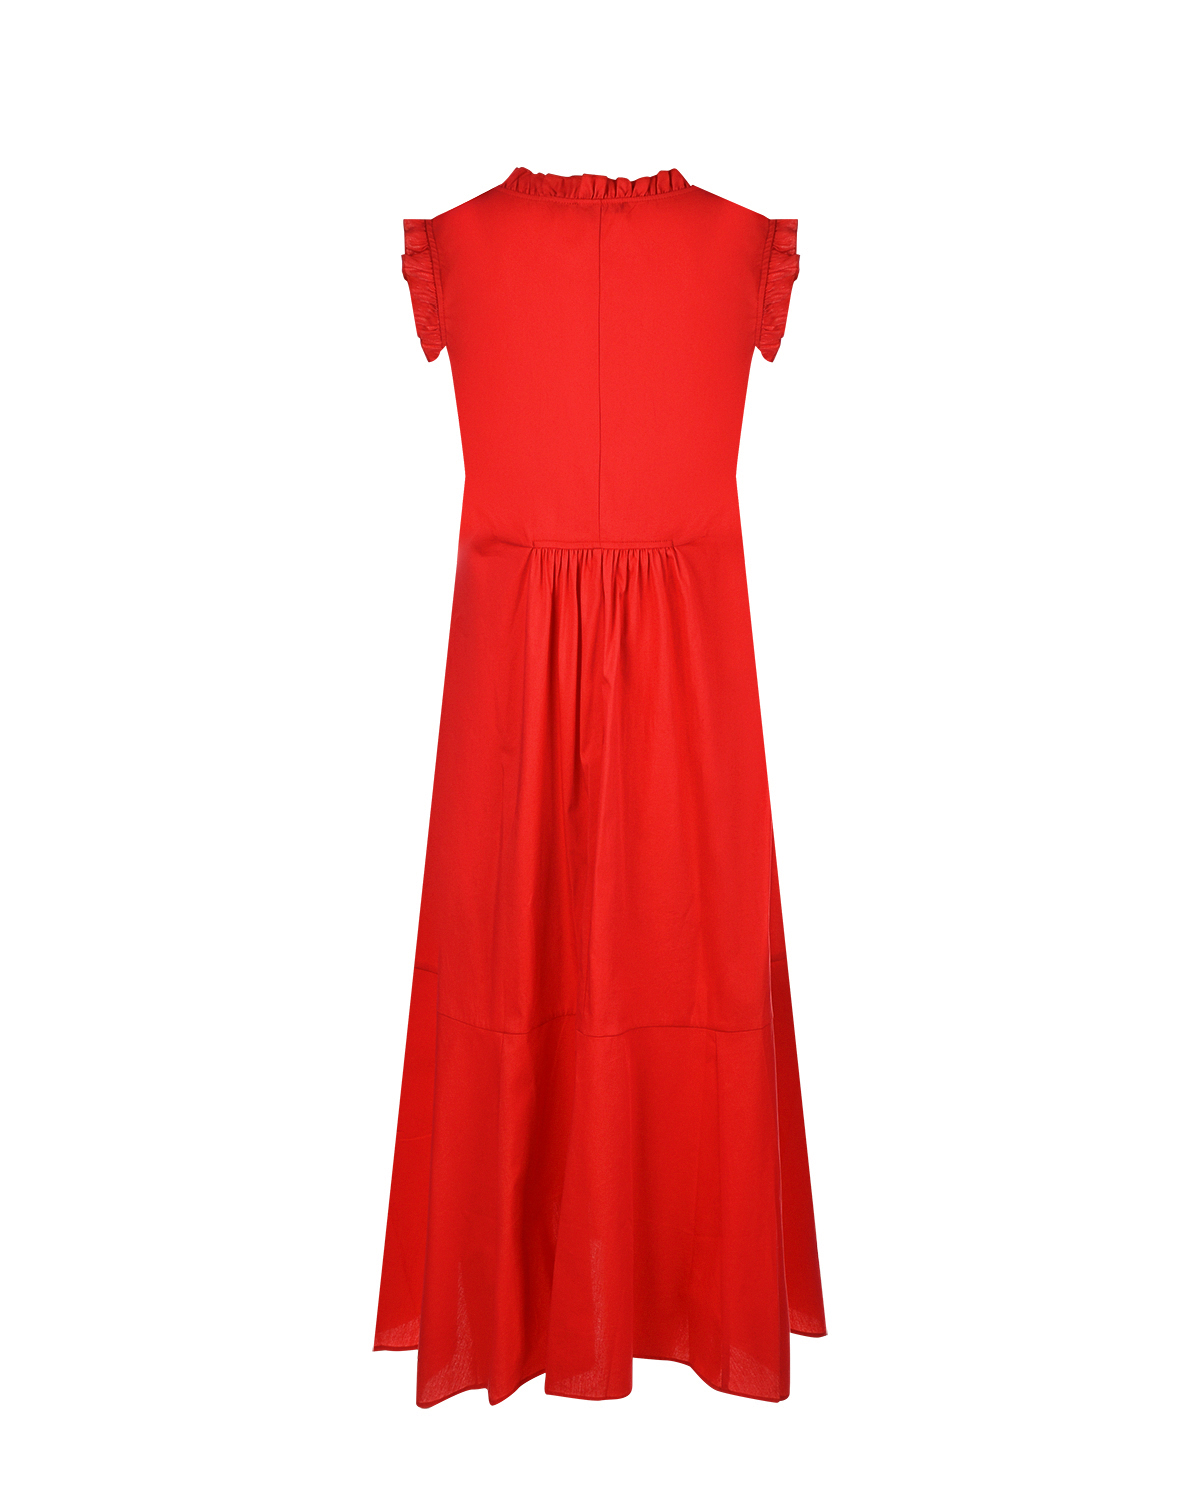 Красное платье с рюшами Attesa, размер 38, цвет красный - фото 5